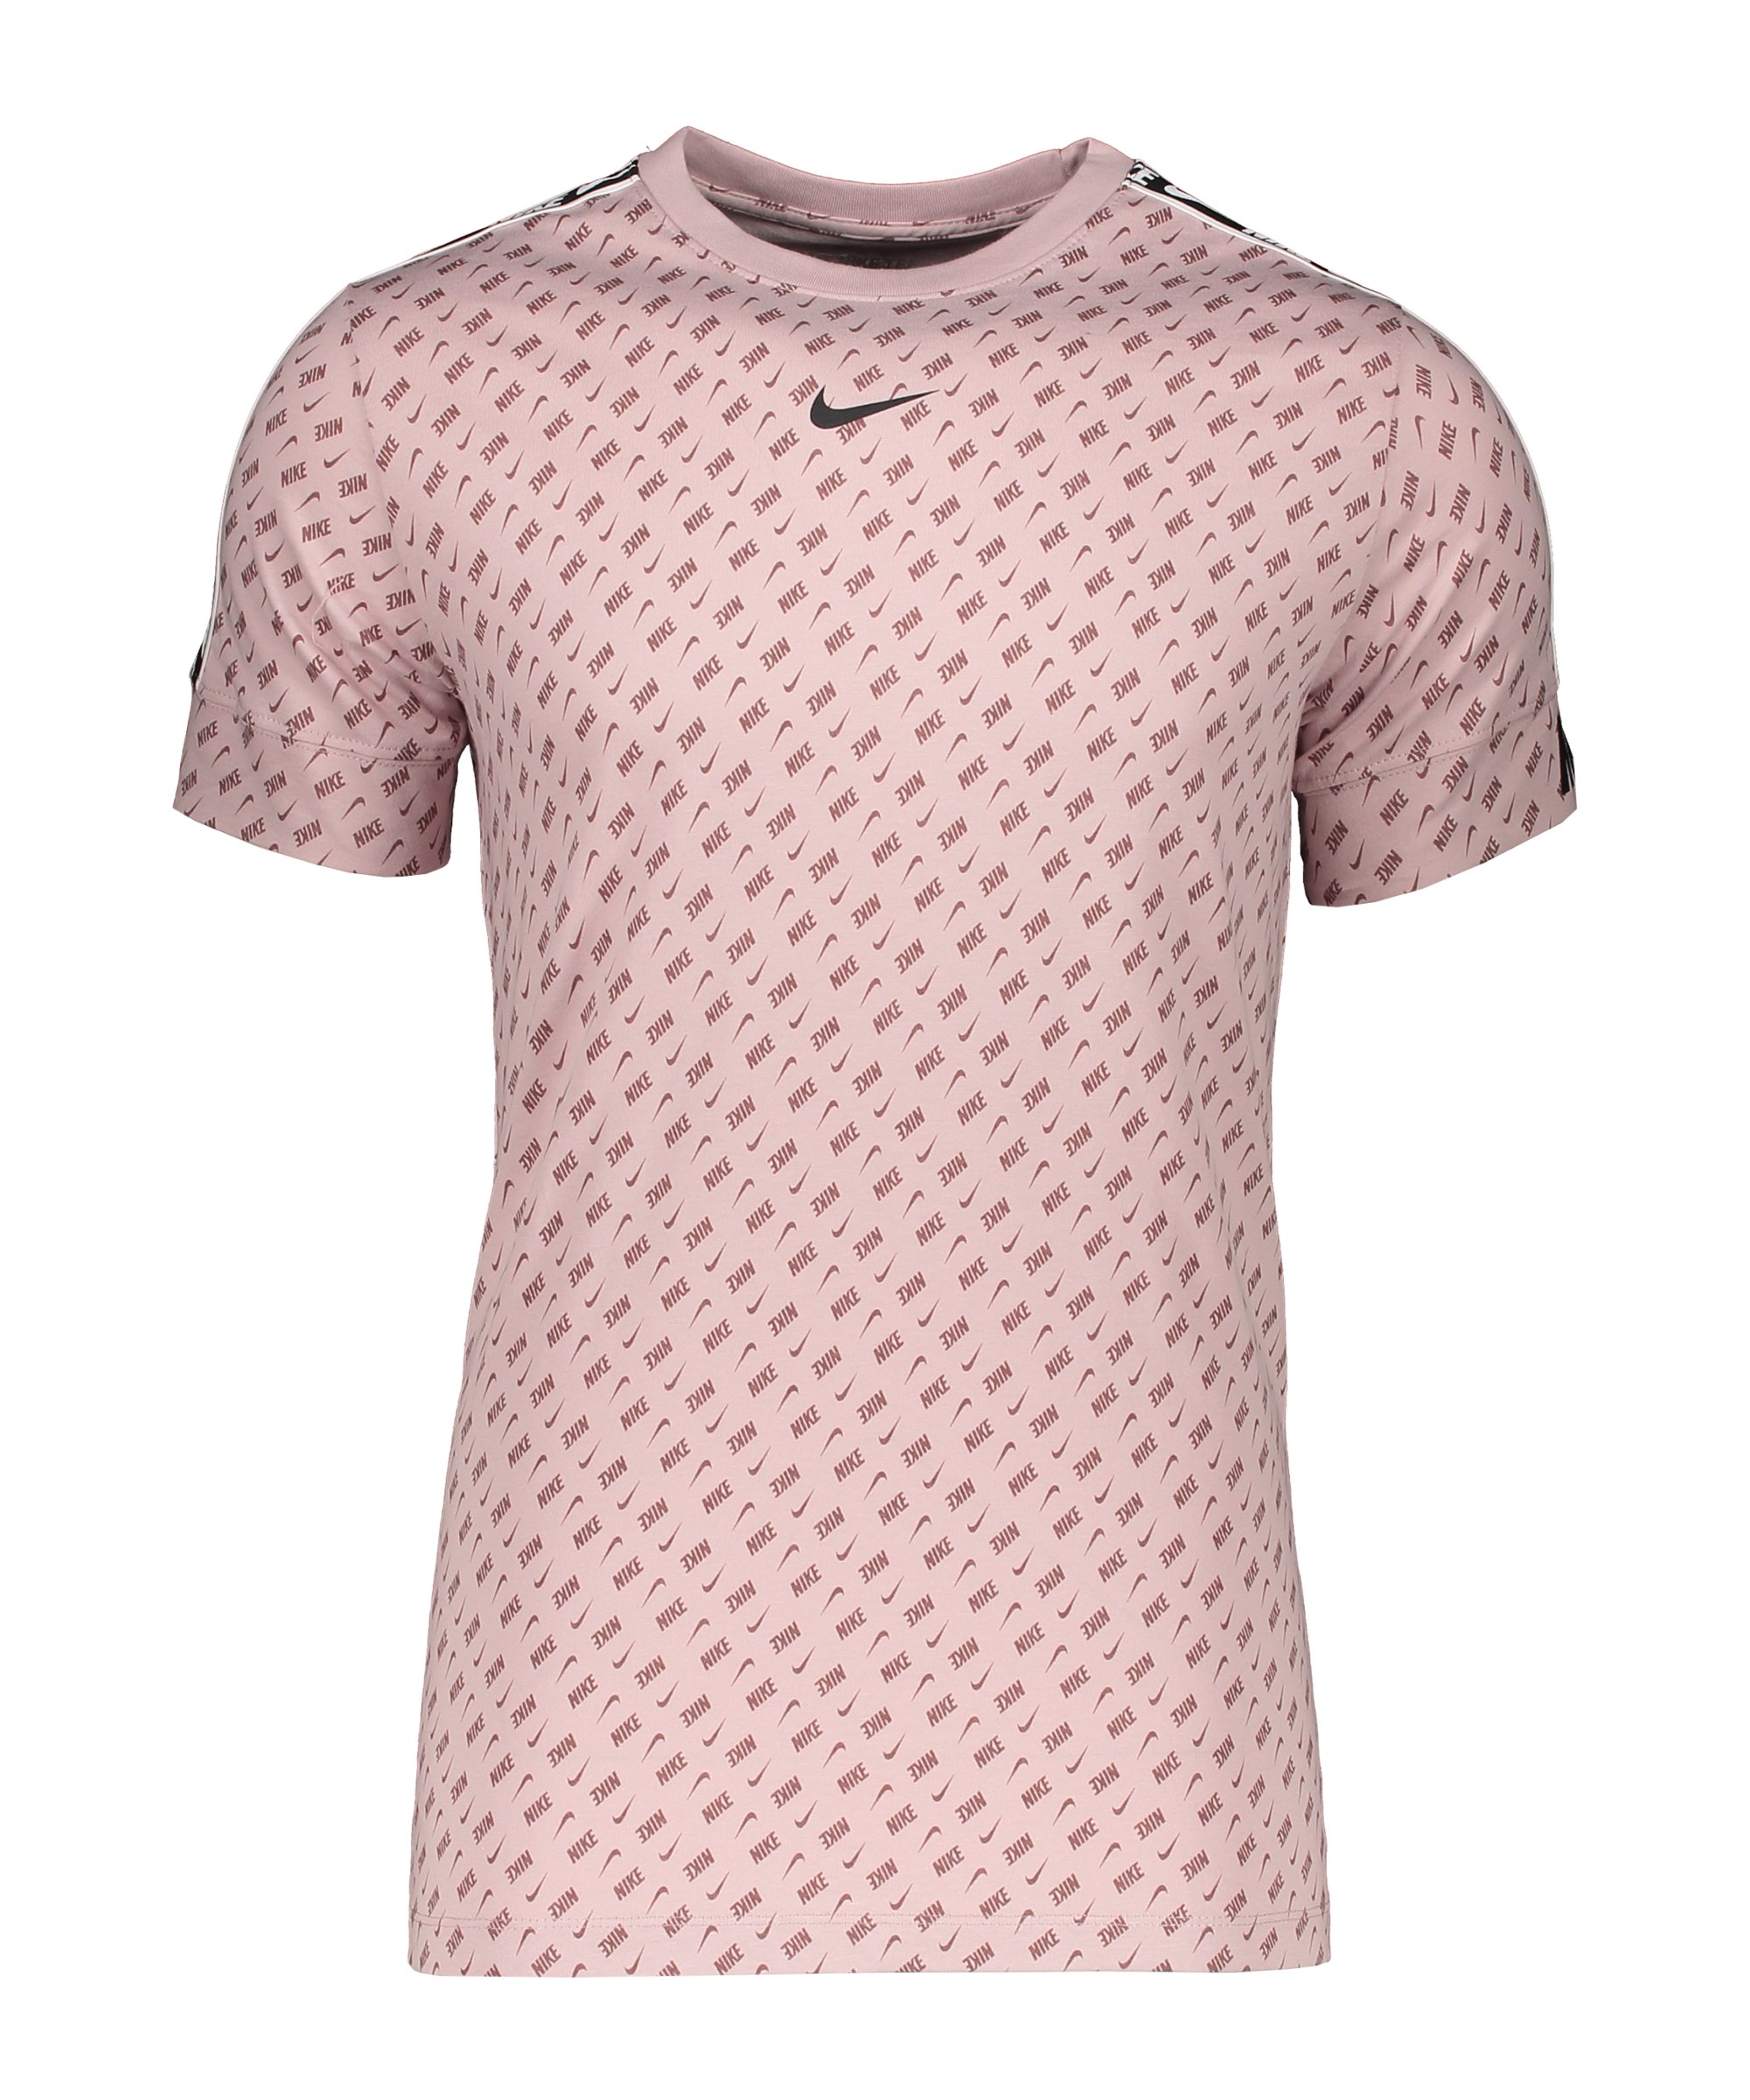 Nike Repeat Print T-Shirt Rosa F646 - rosa